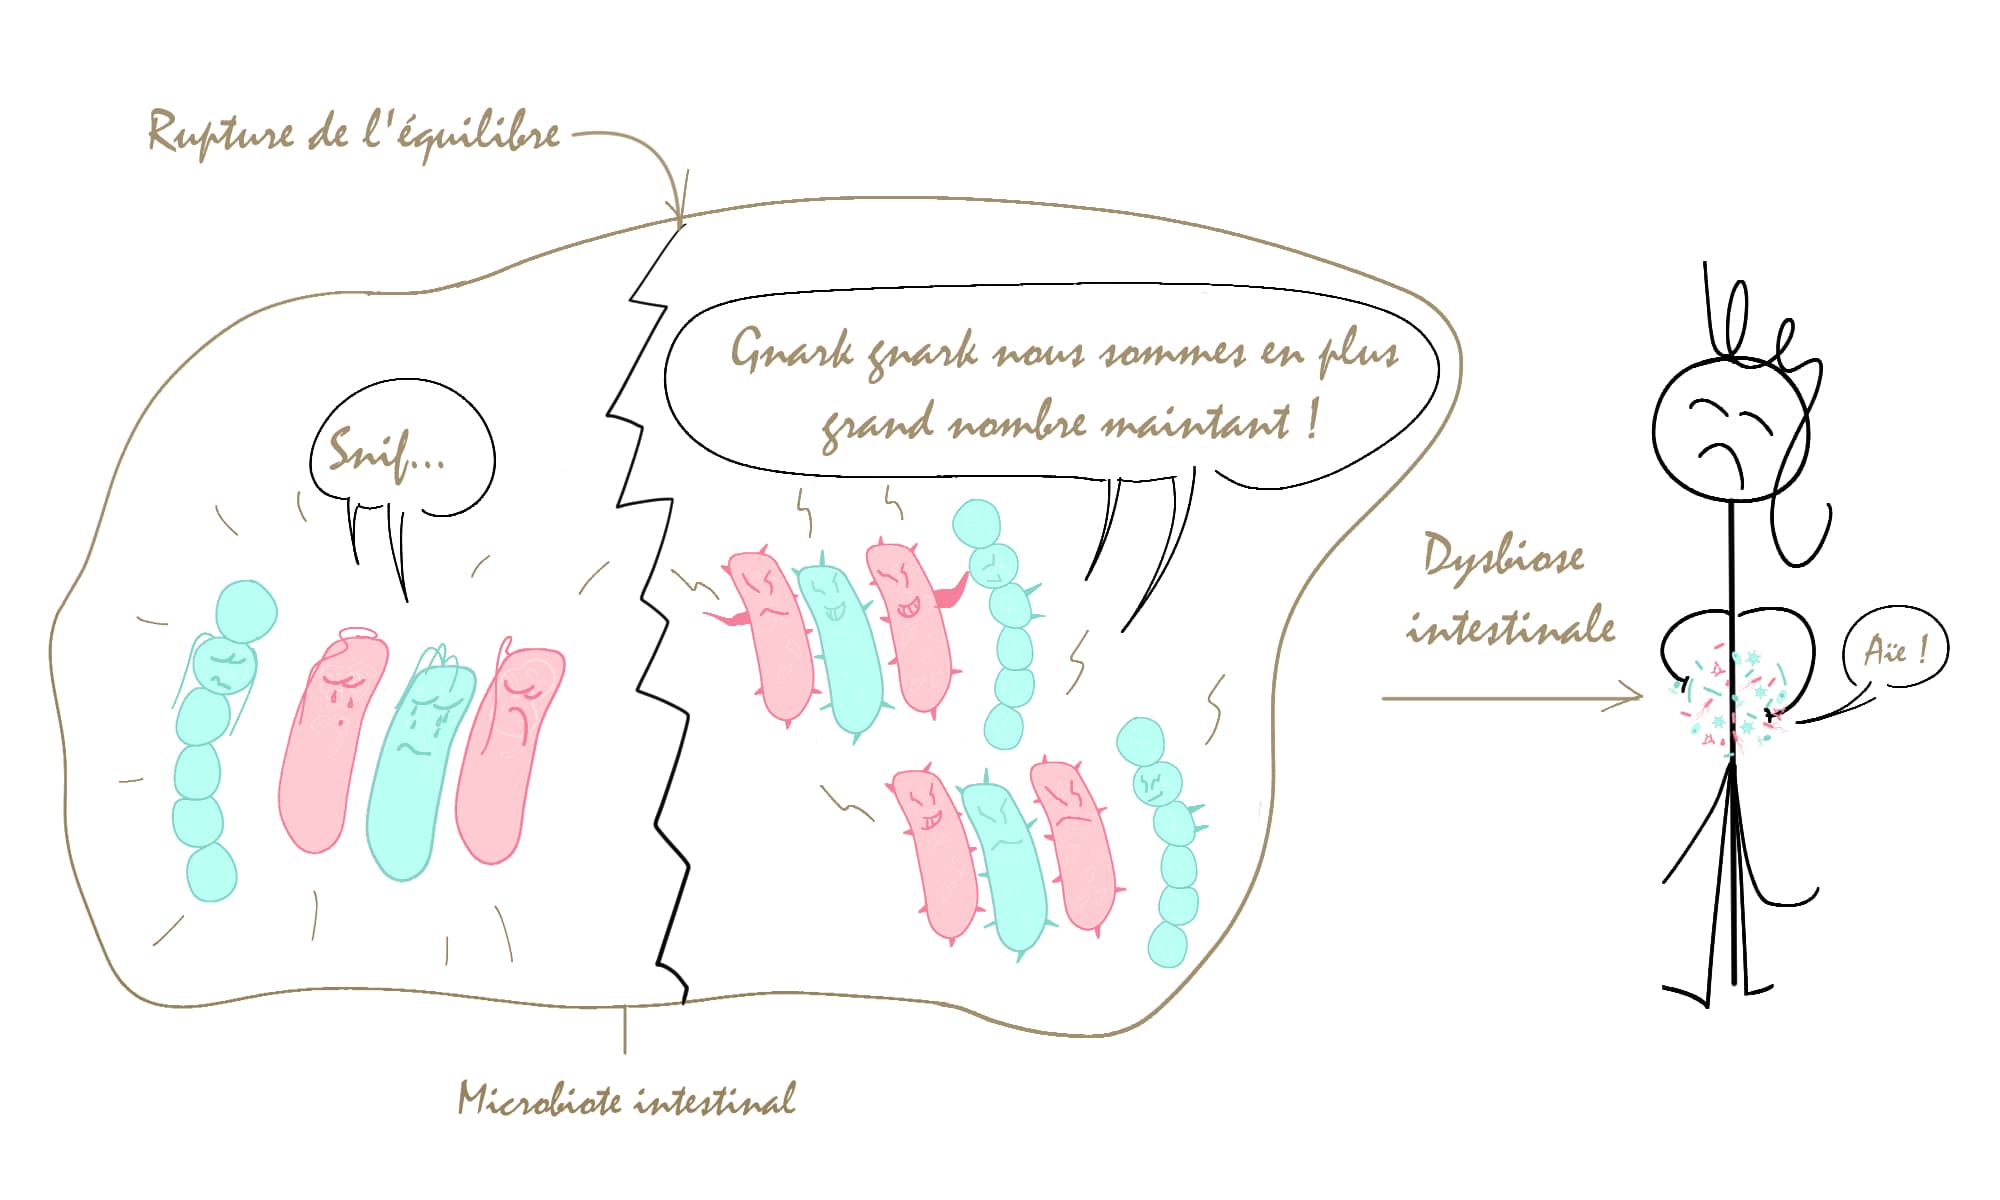 Une rupture de l'équilibre du microbiote intestinal conduit à une dysbiose intestinale